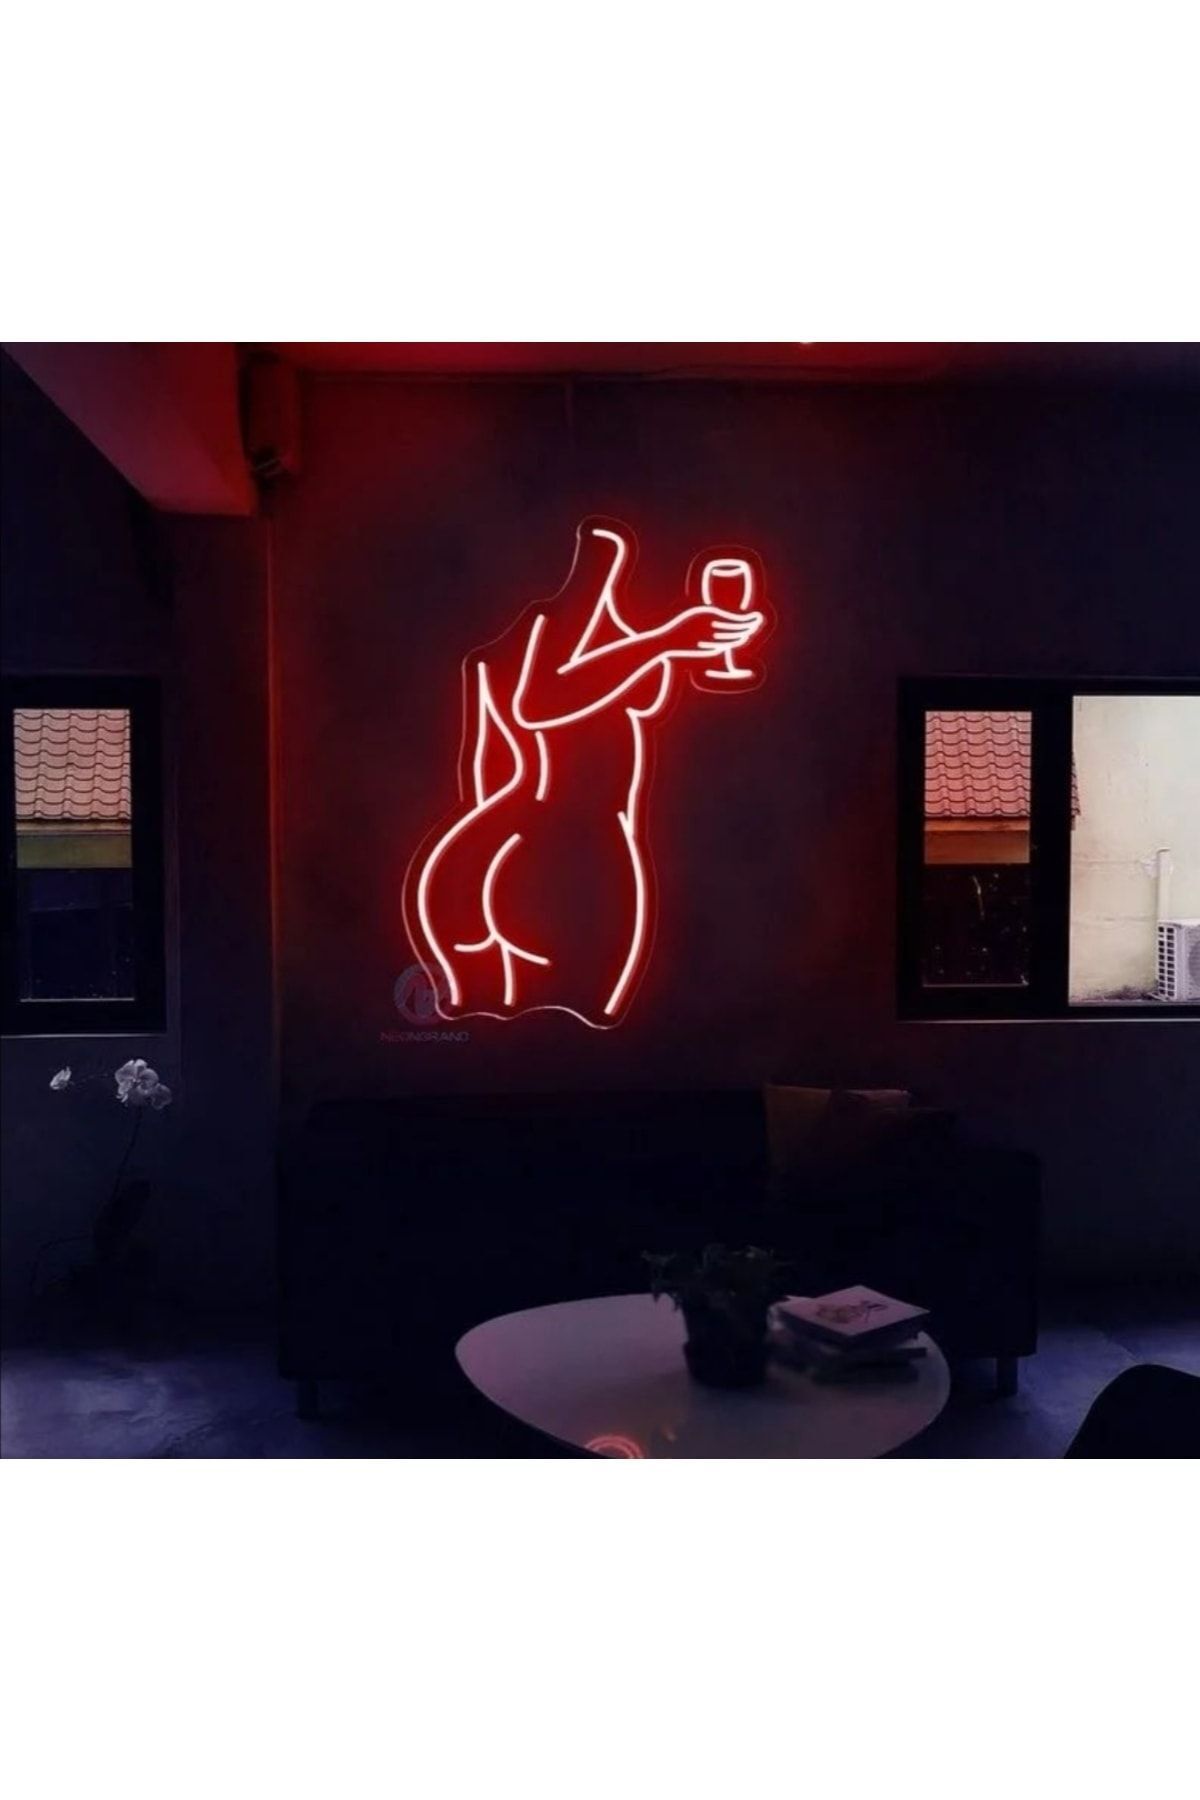 Genel Markalar Woman Body - Neon Led Dekoratif Duvar Yazısı Tabelası Aydınlatması Gece Lambası Smc -1015